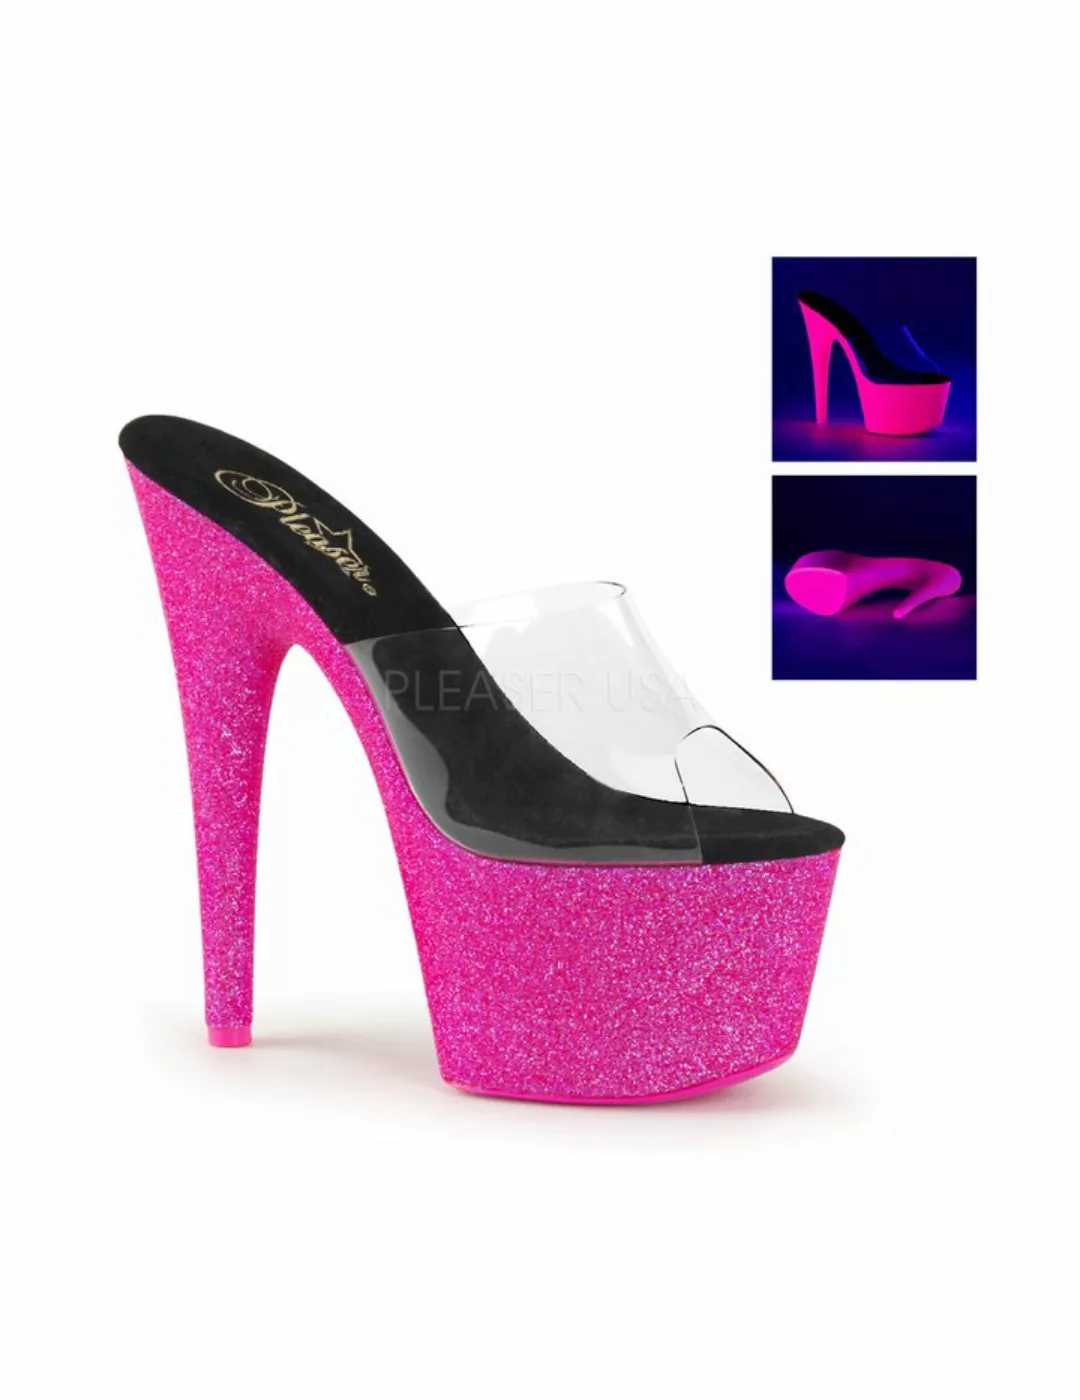 Pantolette ADORE-701UVG, pink, sexy Glitter High Heels von Pleaser günstig online kaufen